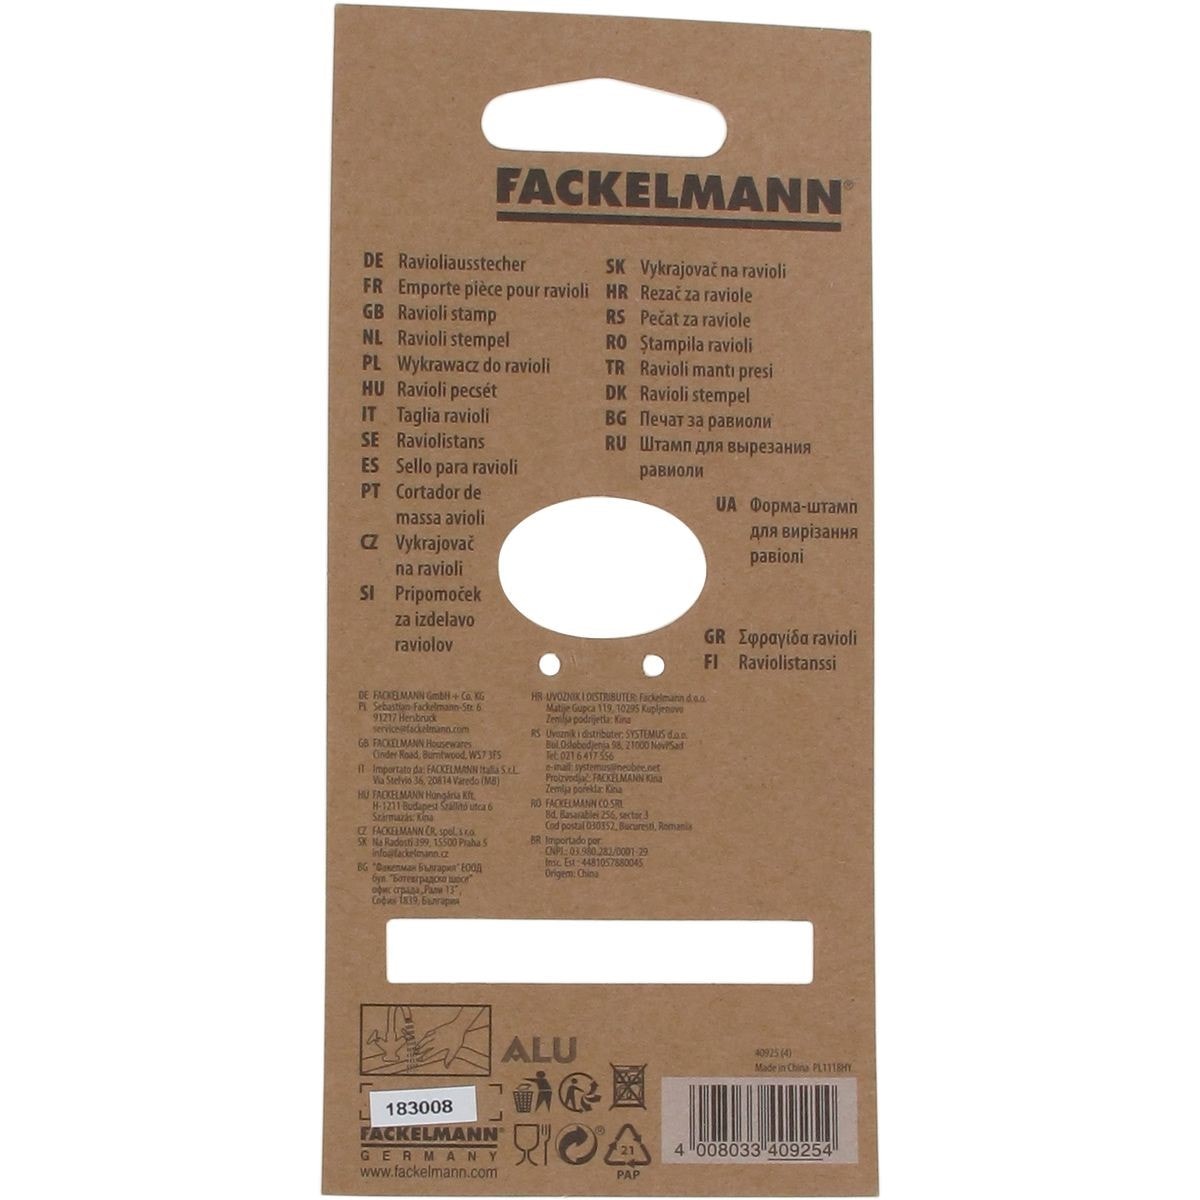 Emporte-pièce pour ravioli rond 5,5 cm Fackelmann 40925 au meilleur prix